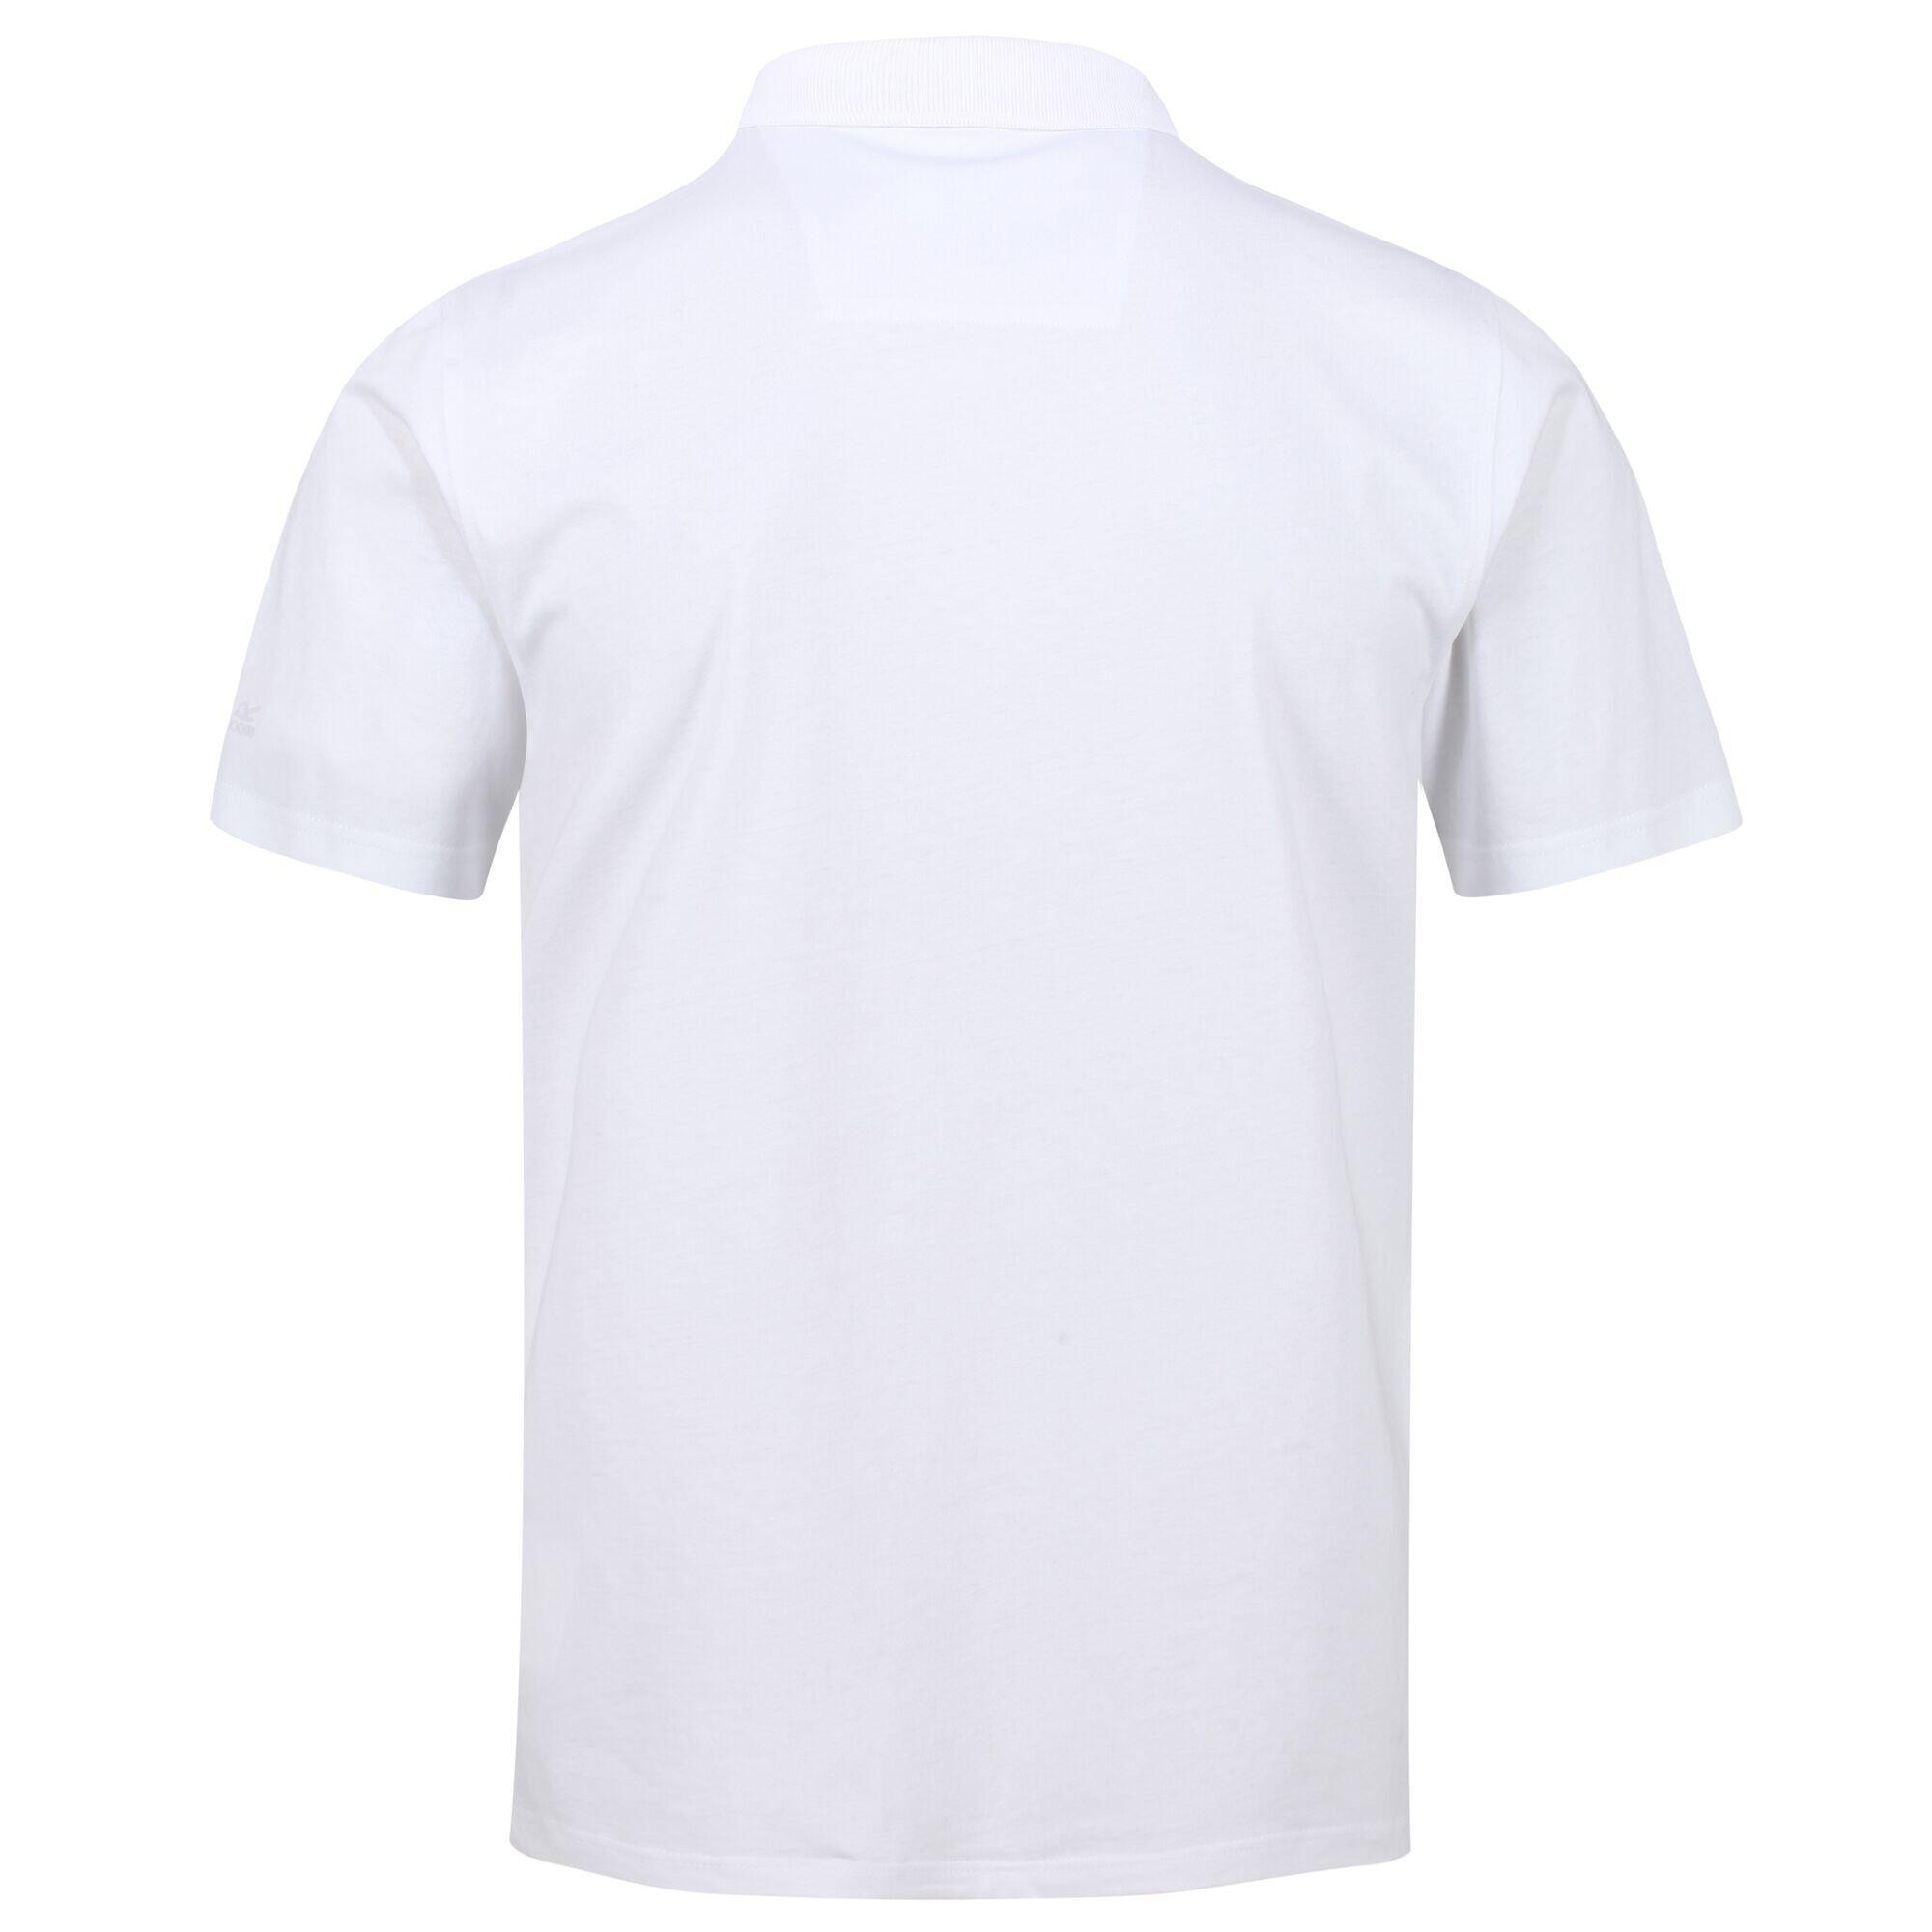 Sinton Men's Fitness Short Sleeve Polo Shirt - White 6/6